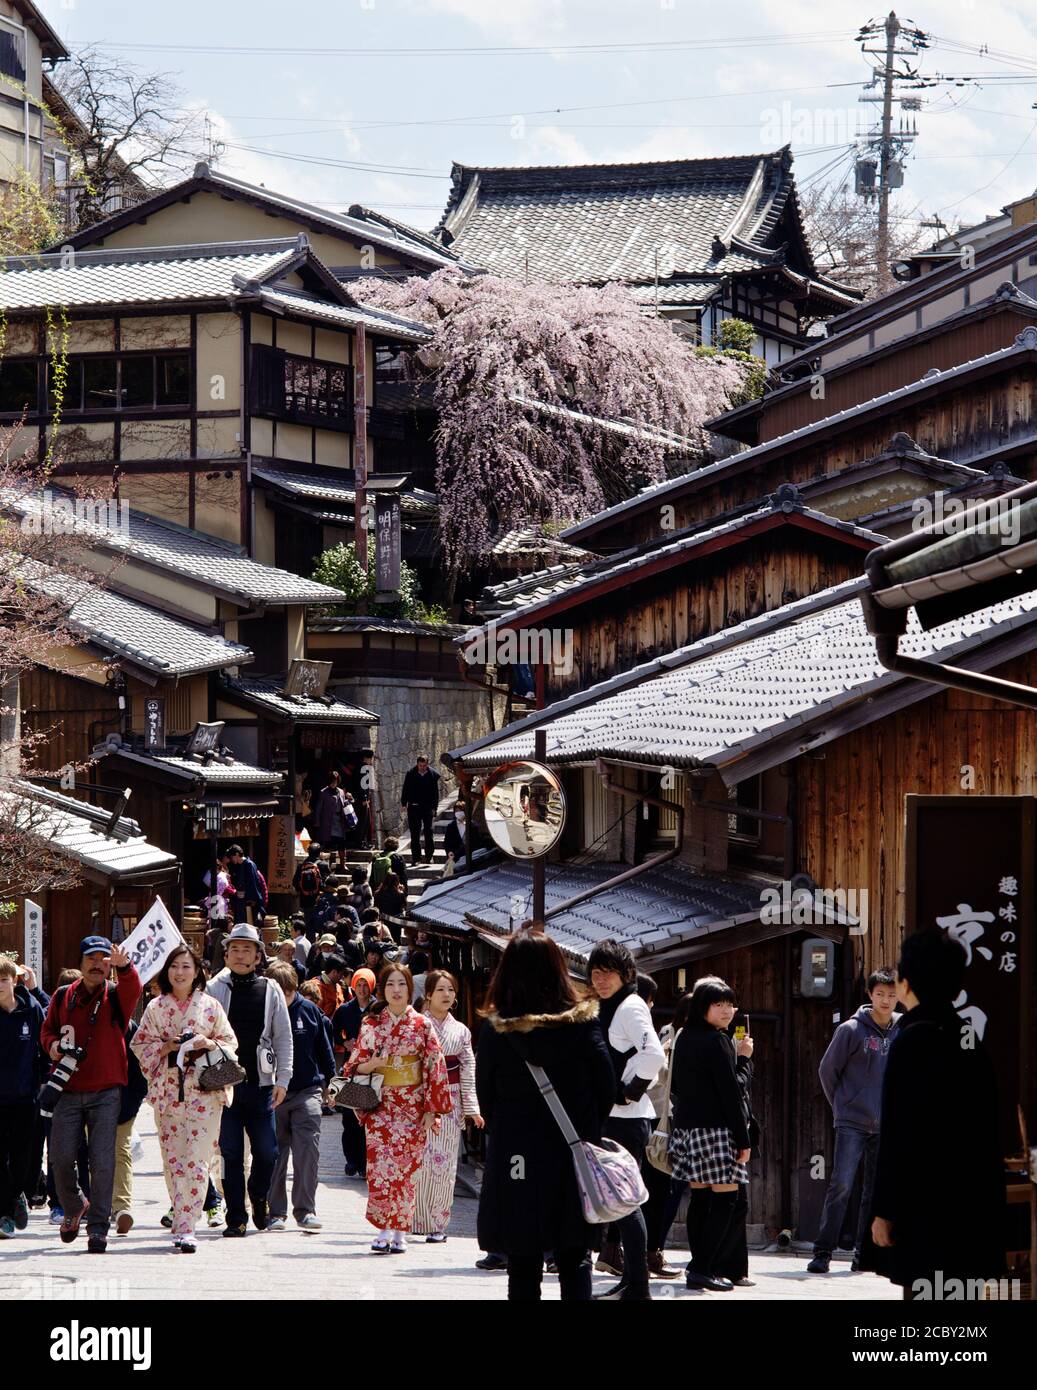 People waking around shops in Sannen-zaka Street, Kyoto, Japan 2012. Stock Photo